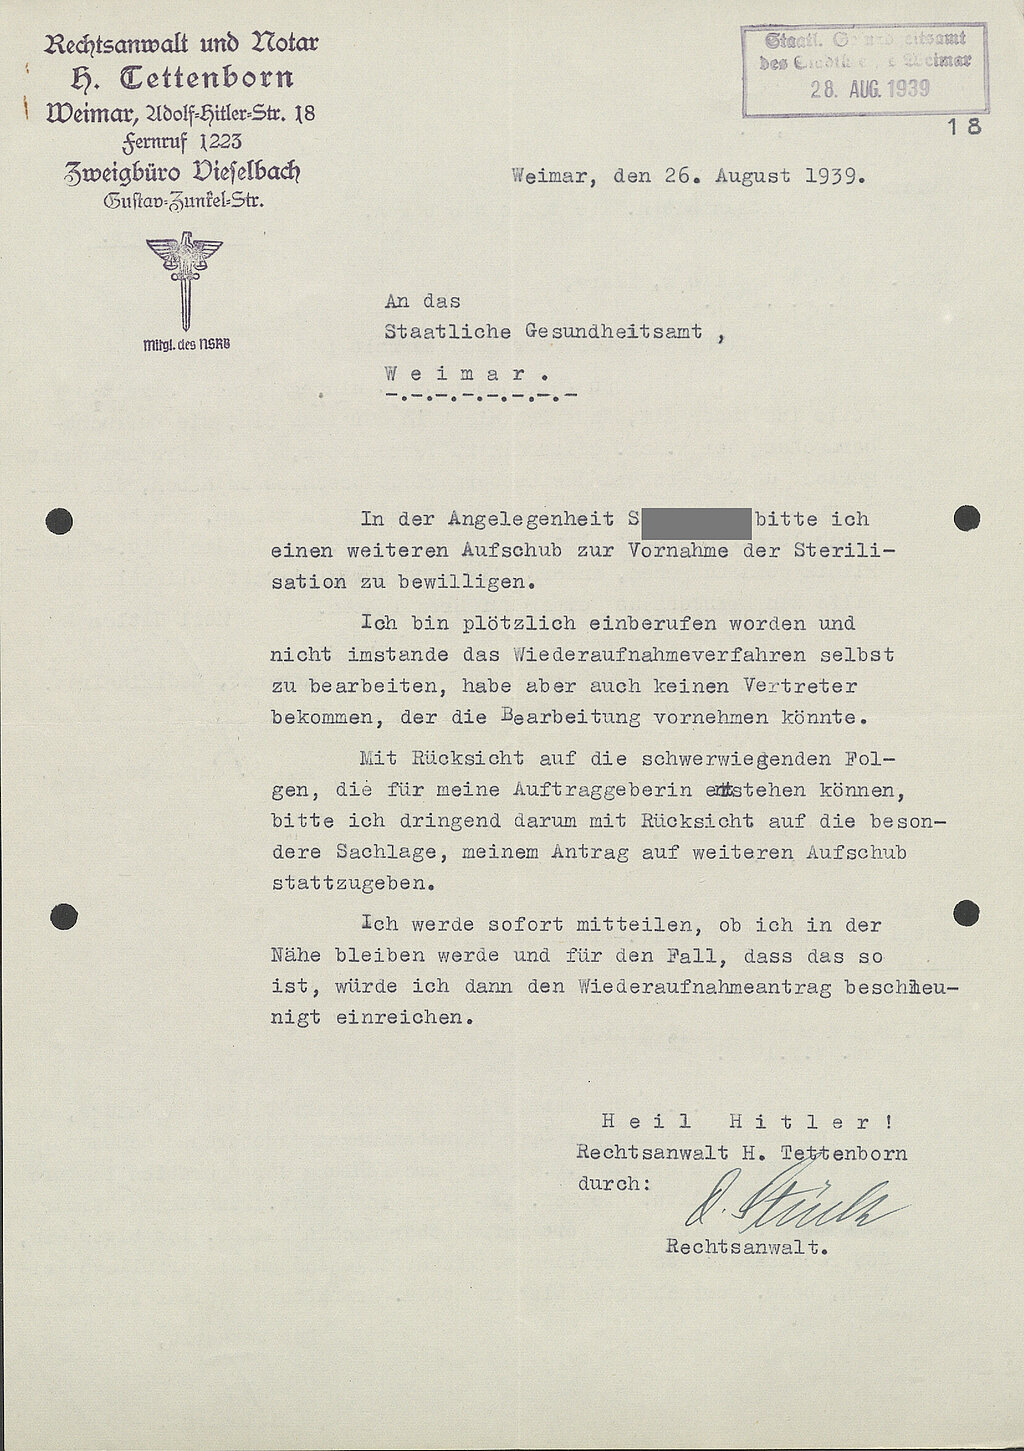 Rechtsanwalt Tettenborn bittet den Amtsarzt Freienstein um Aufschub der Sterilisation von Klara S., da er das geplante Wiederaufnahmeverfahren wegen "plötzlicher Einberufung" nicht bearbeiten kann. Der Brief wurde am 26. August 1939 verfasst.